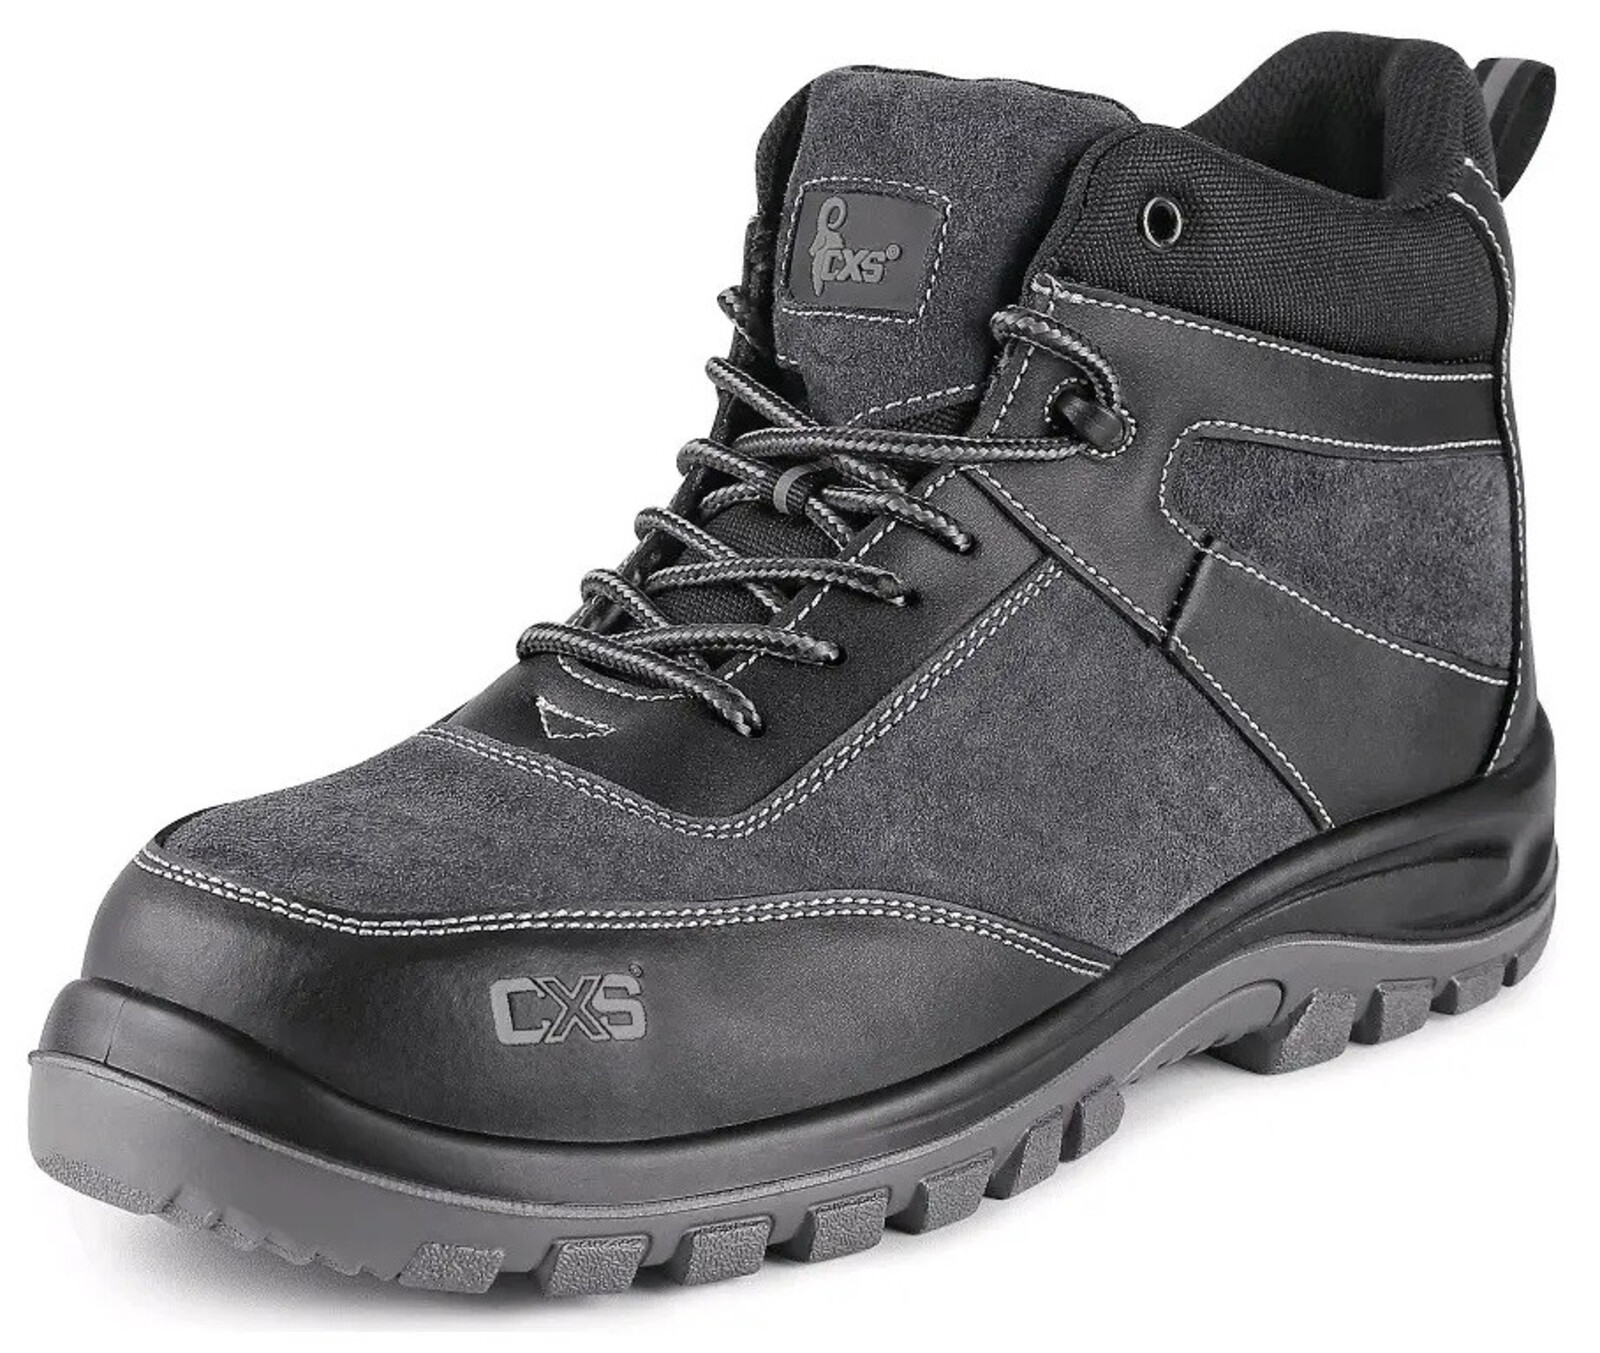 Bezpečnostná členková obuv CXS Profit Top S1P SRC - veľkosť: 42, farba: čierna/sivá